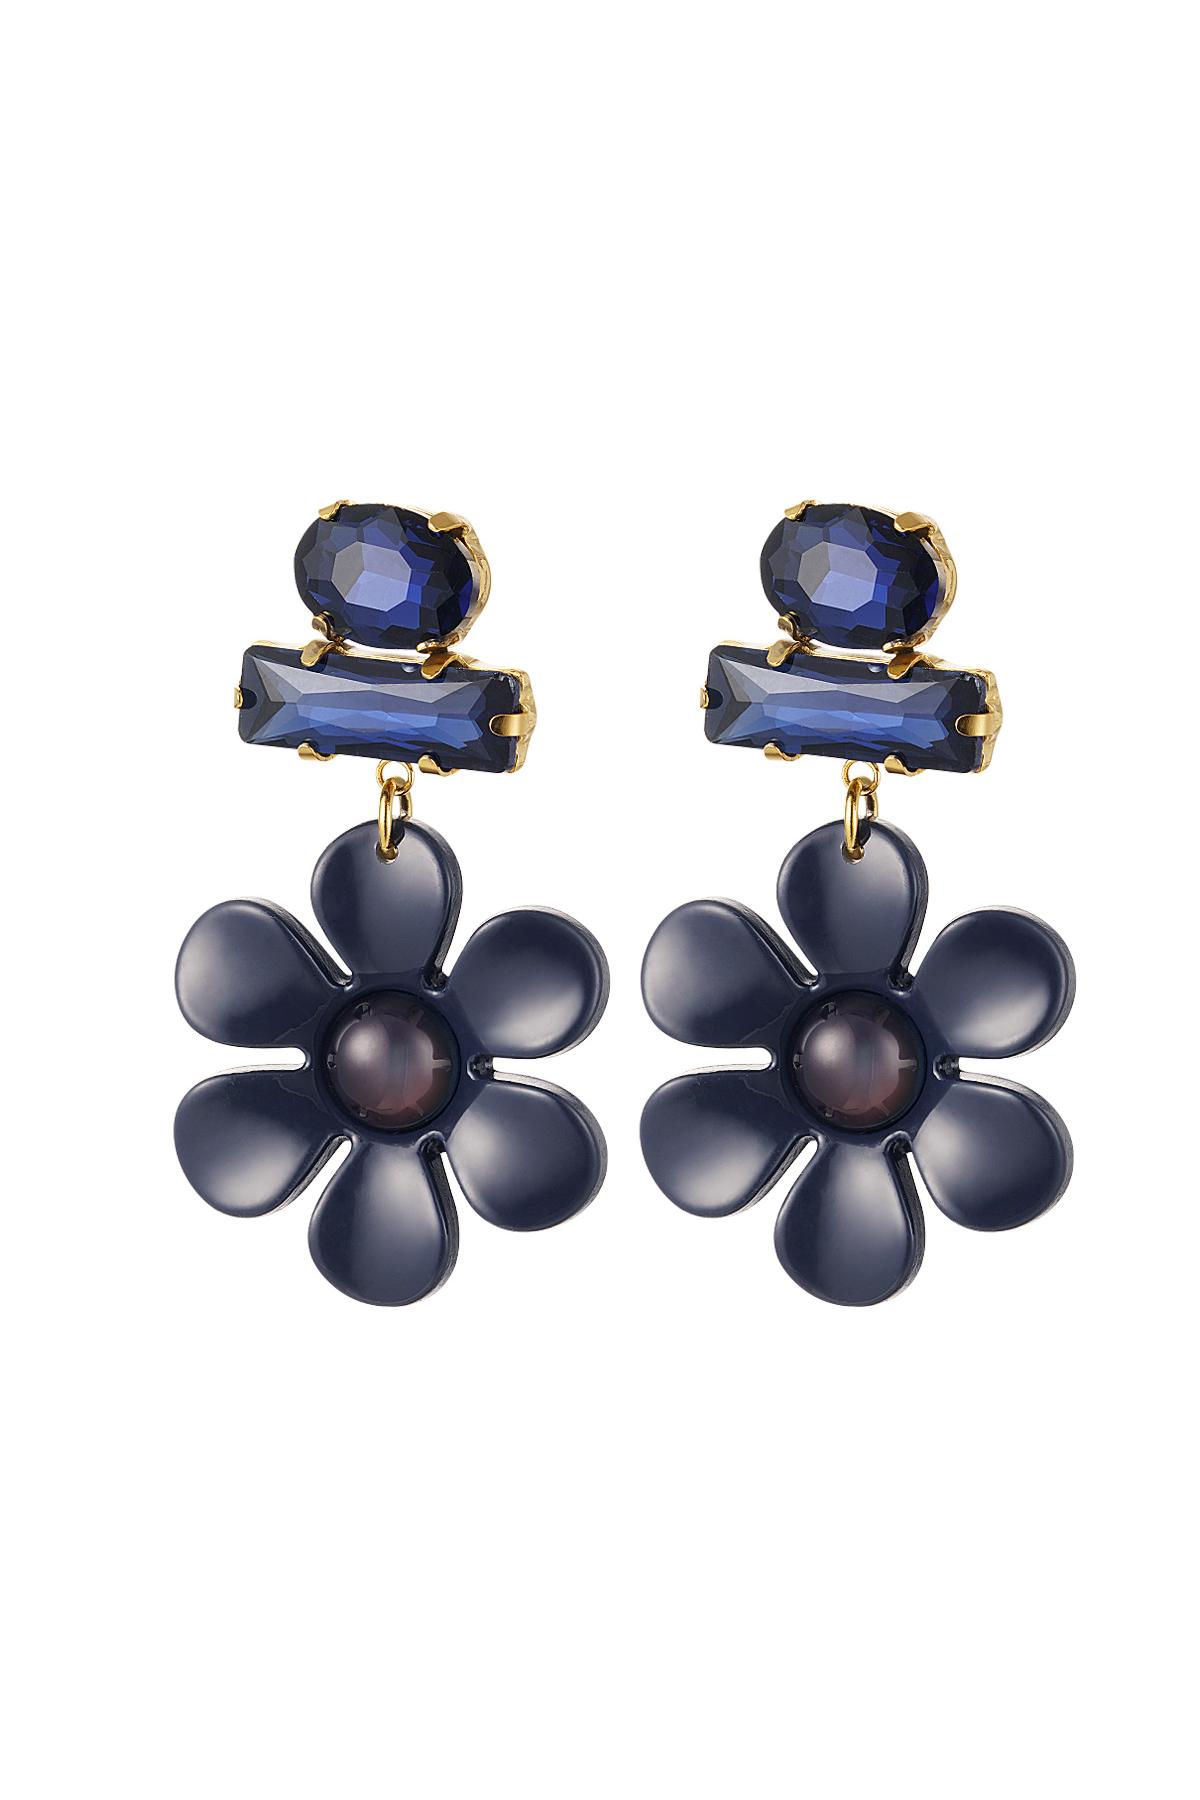 Boucles d'oreilles fleur avec perles de verre Bleu & Or Acier inoxydable h5 